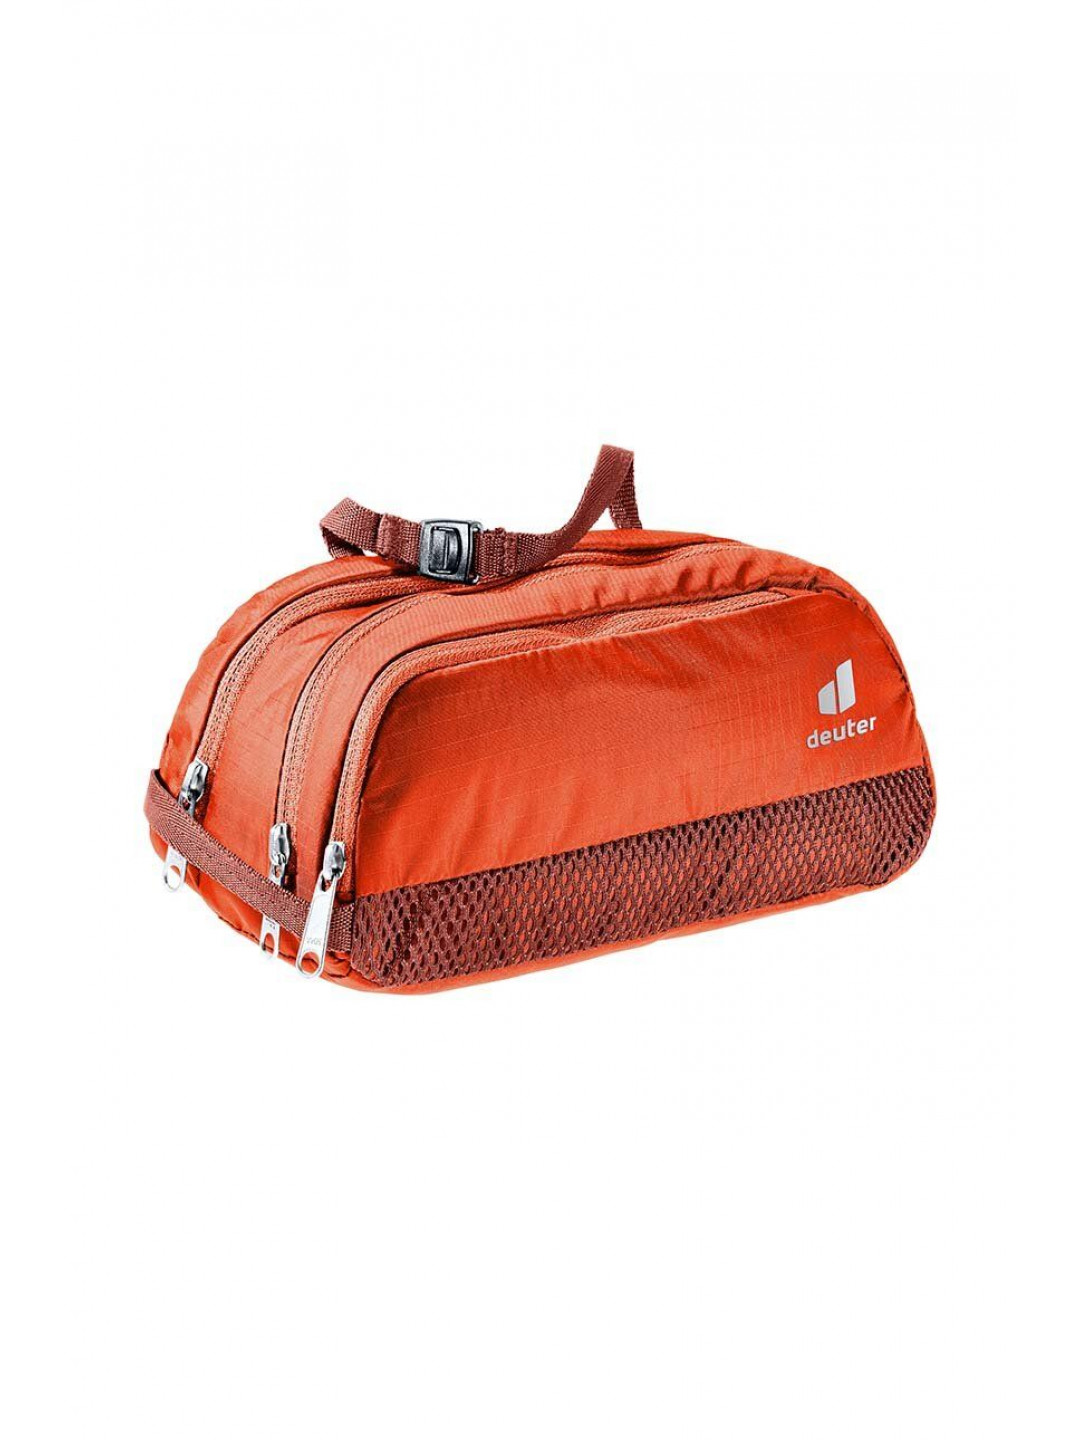 Kosmetická taška Deuter Wash Bag Tour II oranžová barva 393002195130